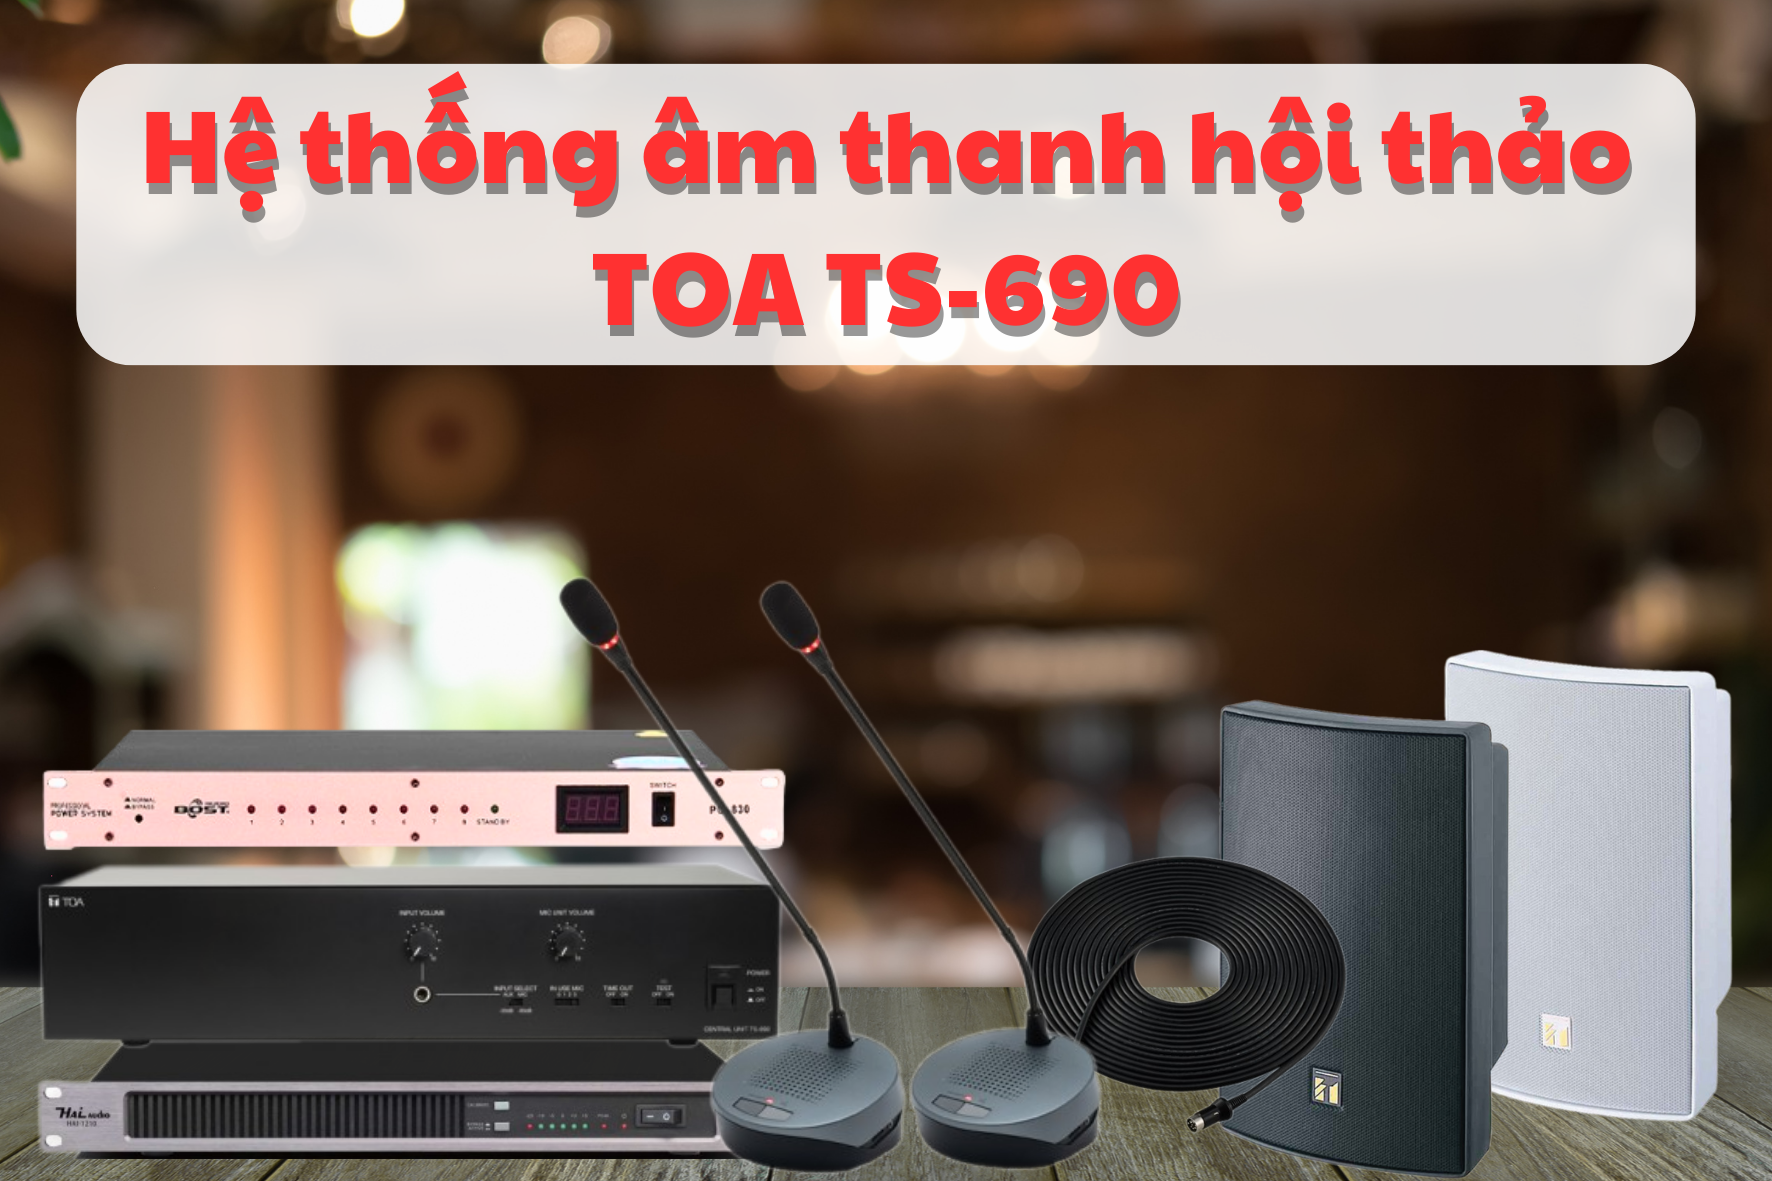 Dàn âm thanh hội thảo hãng TOA TS-690 